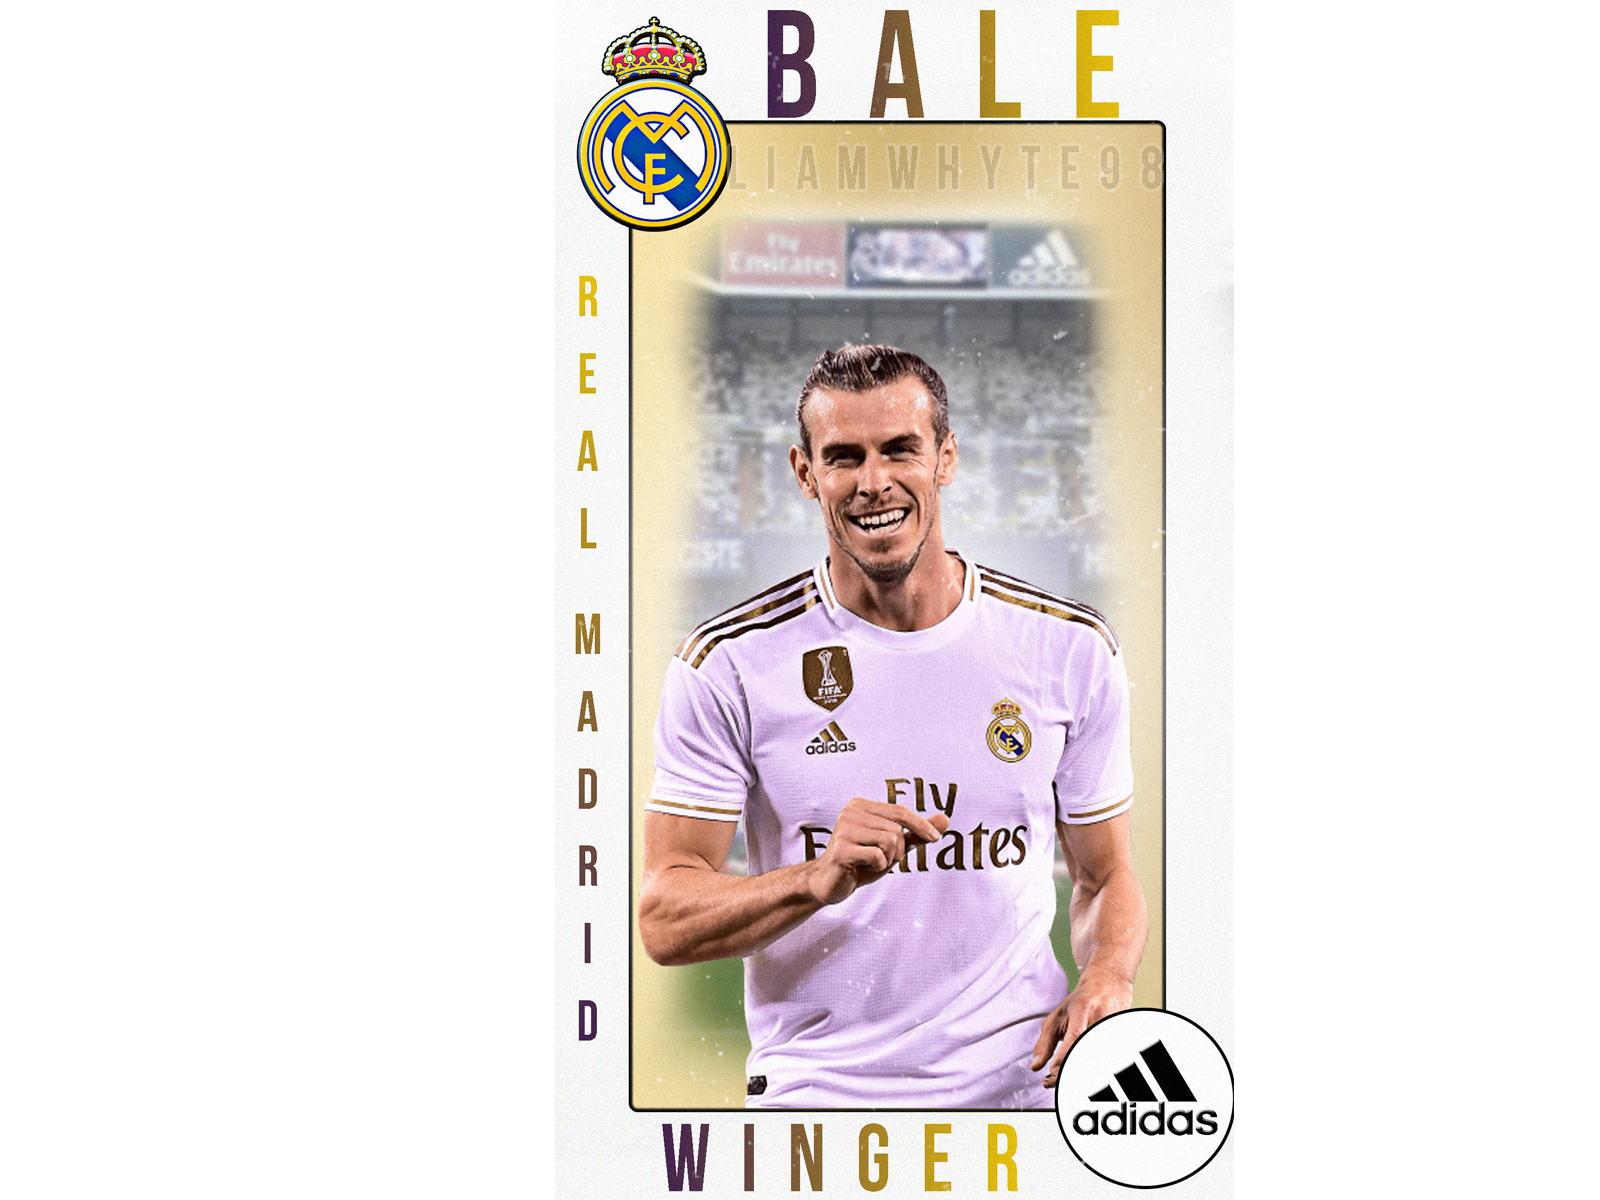 Gareth Bale - Player profile